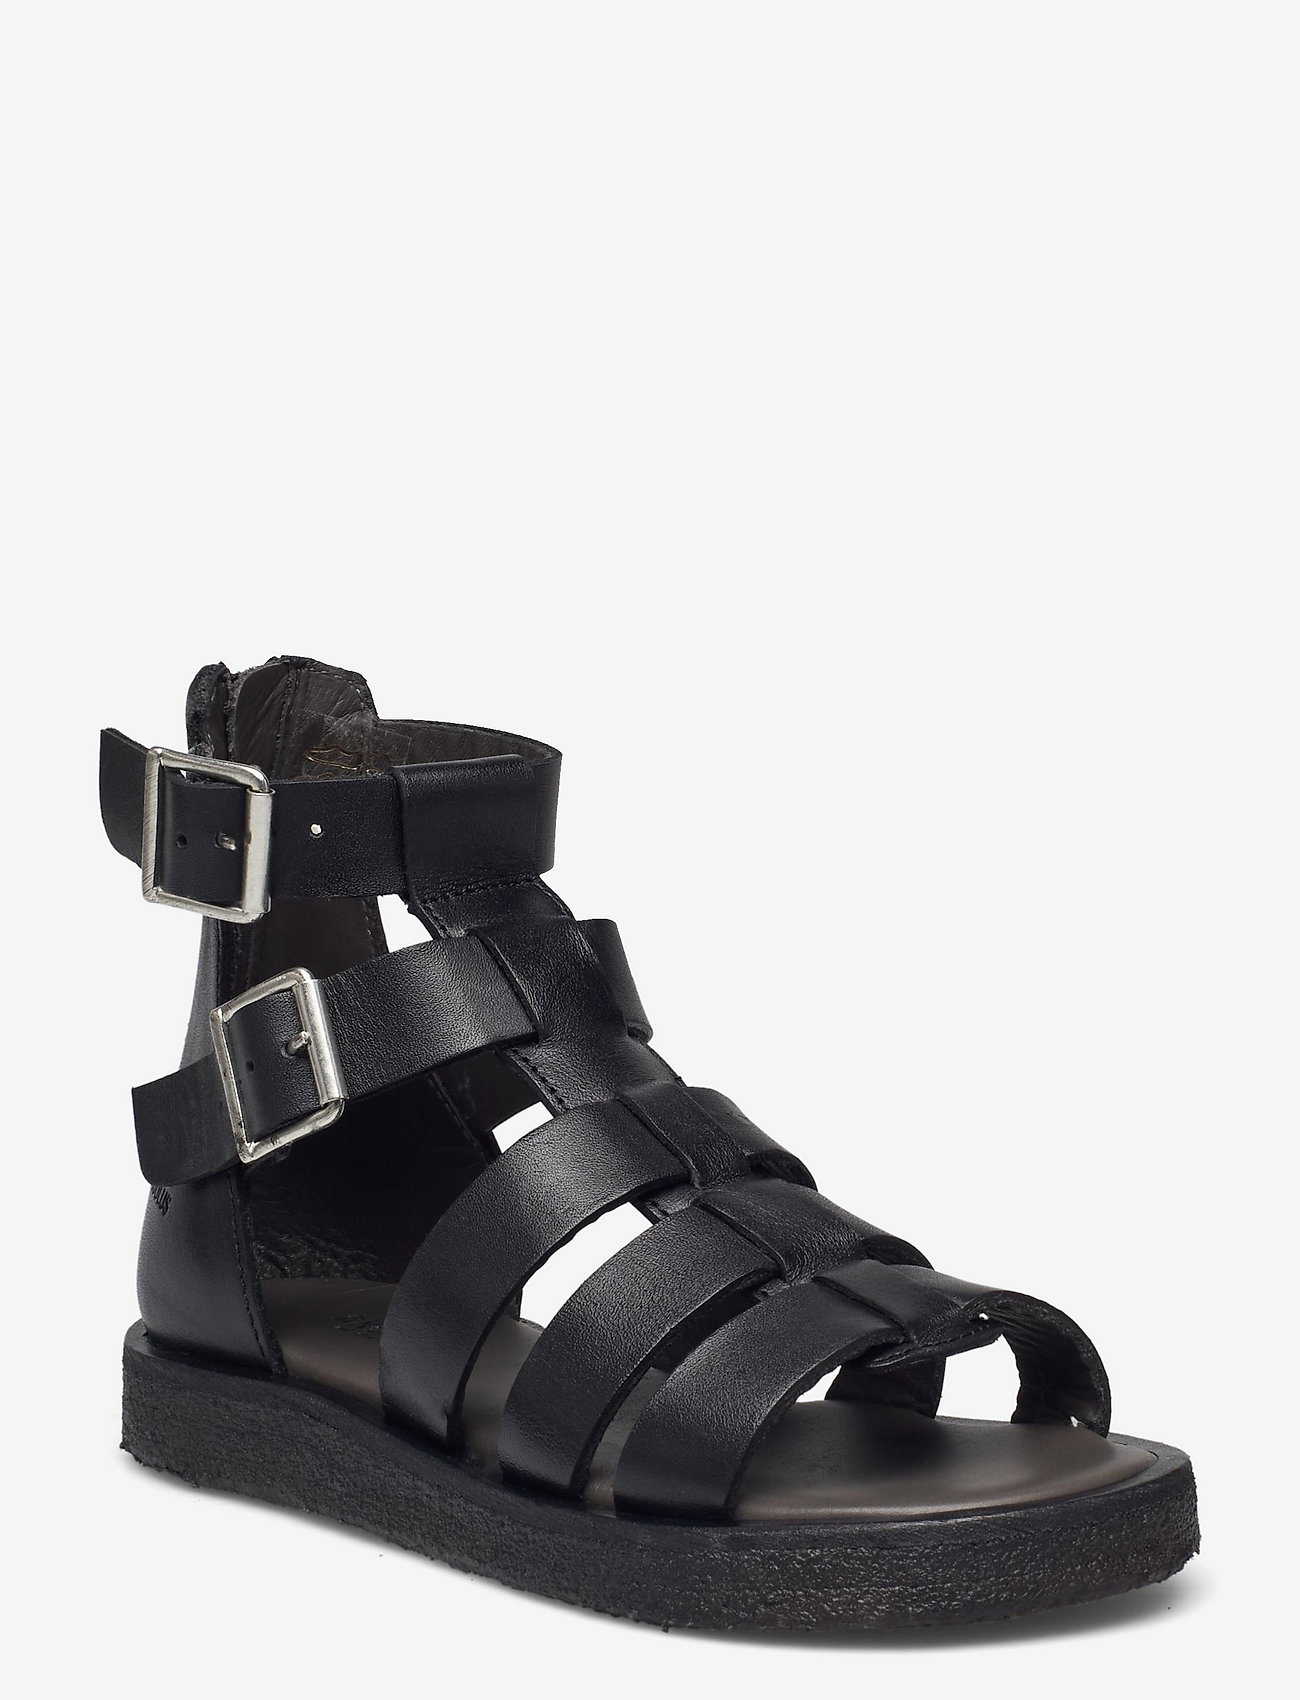 ANGULUS - Sandals - flat - open toe - clo - 1785 black - 0